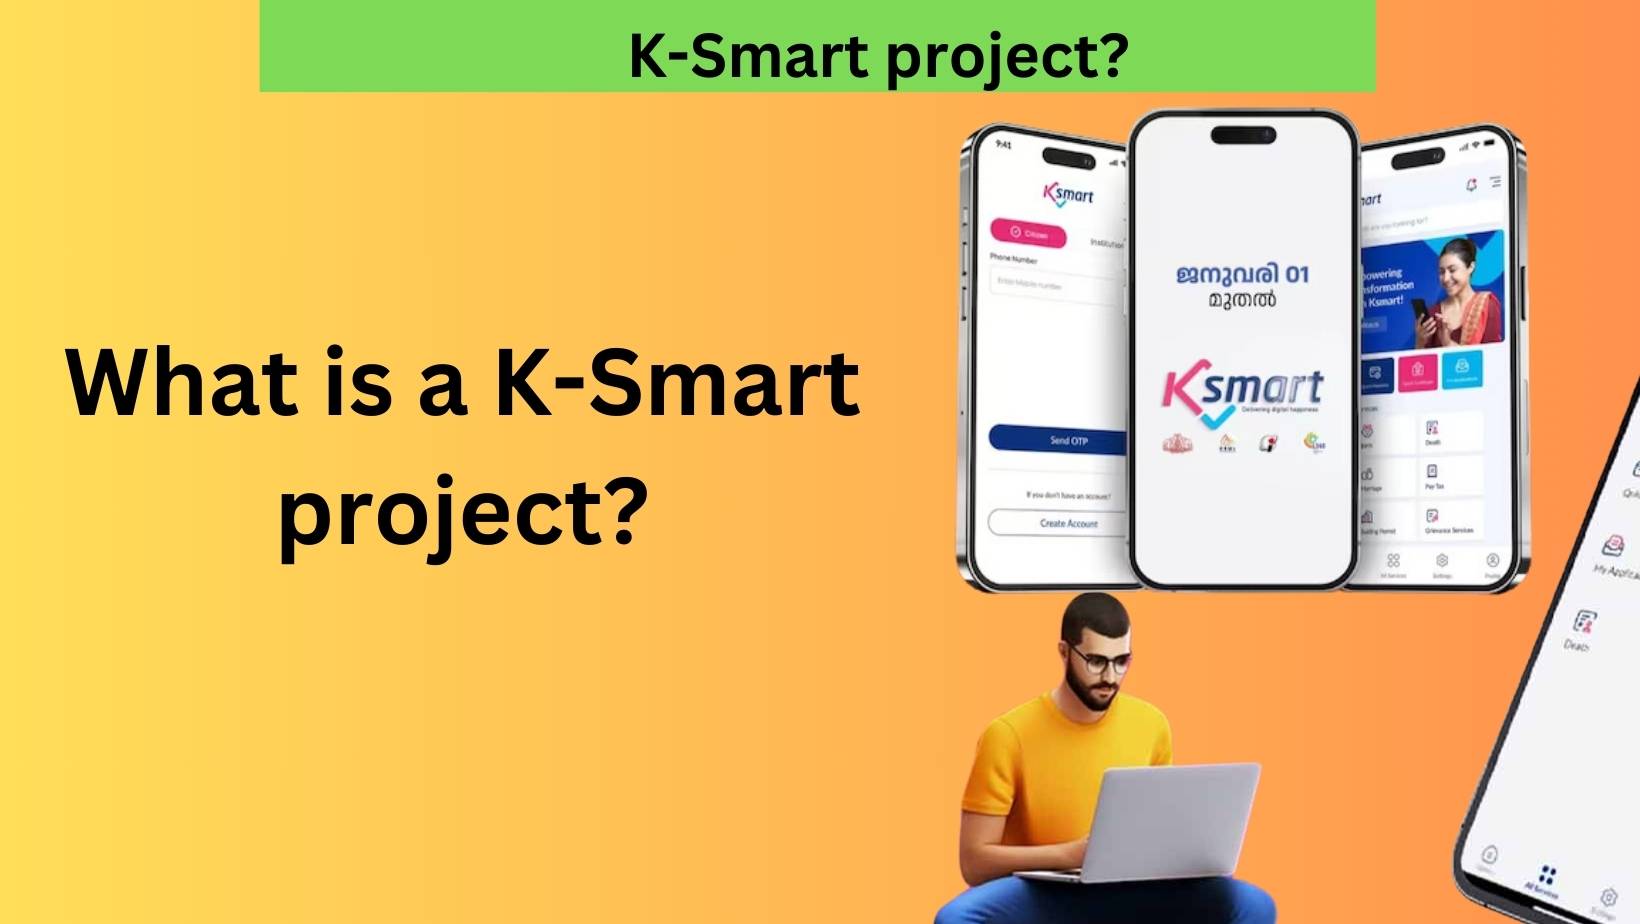 K-Smart" project